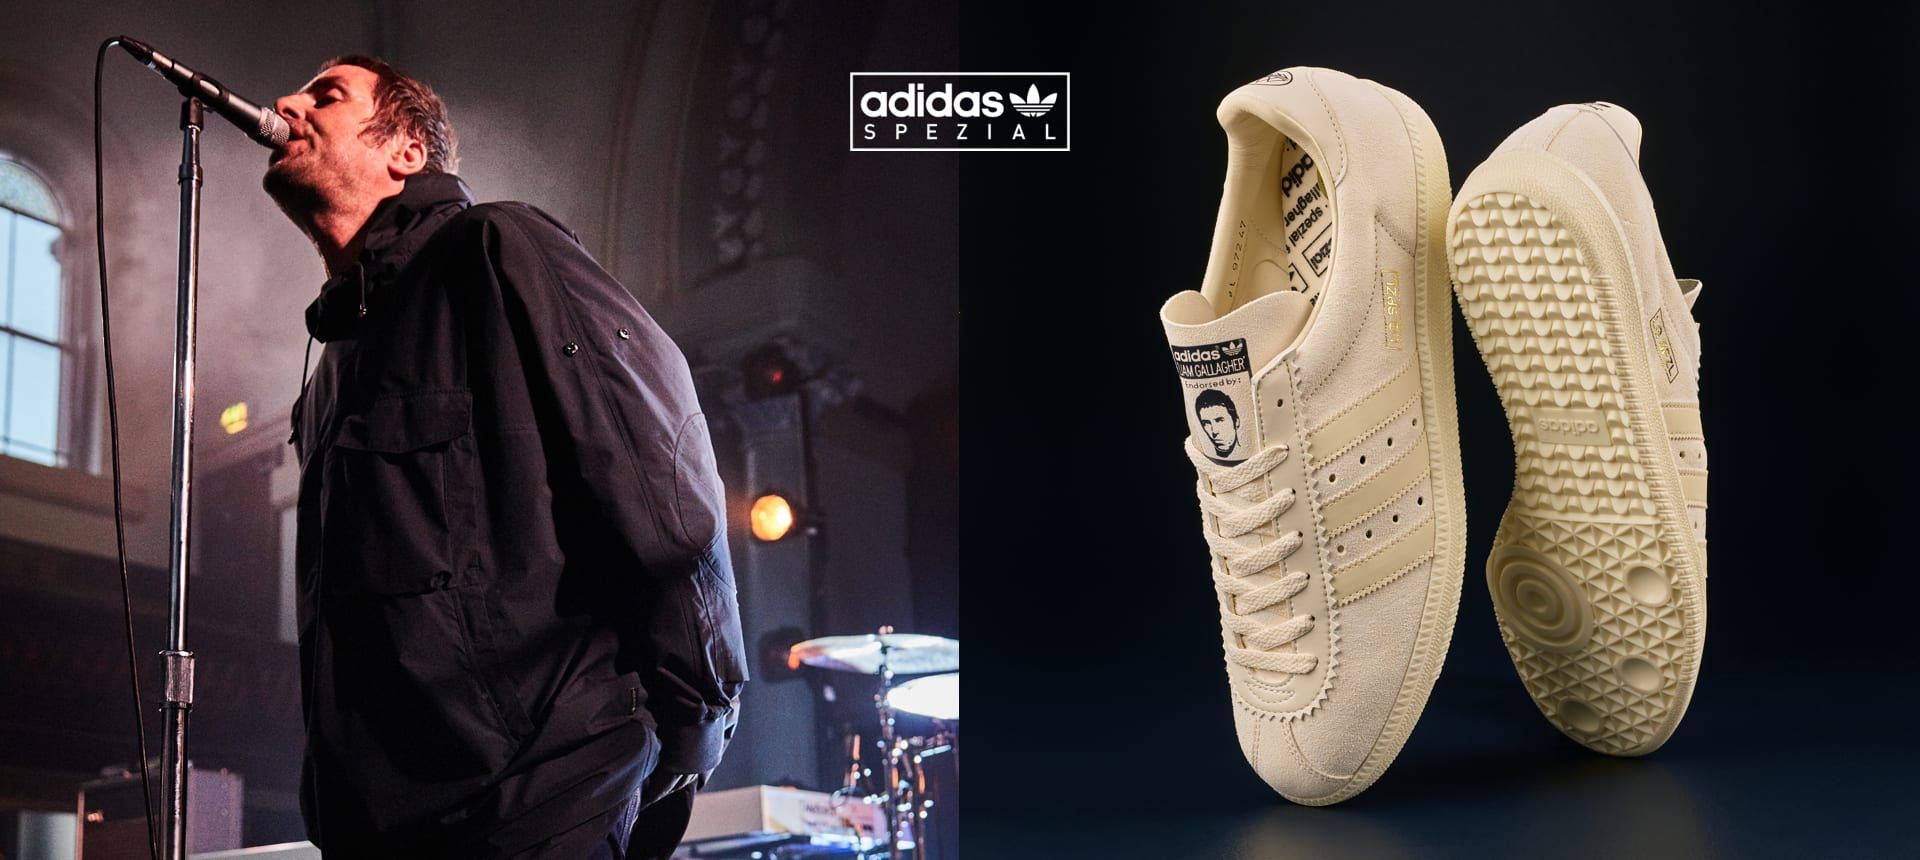 hacer clic Destilar Equipo Adidas lanza unas zapatillas junto a Liam Gallagher